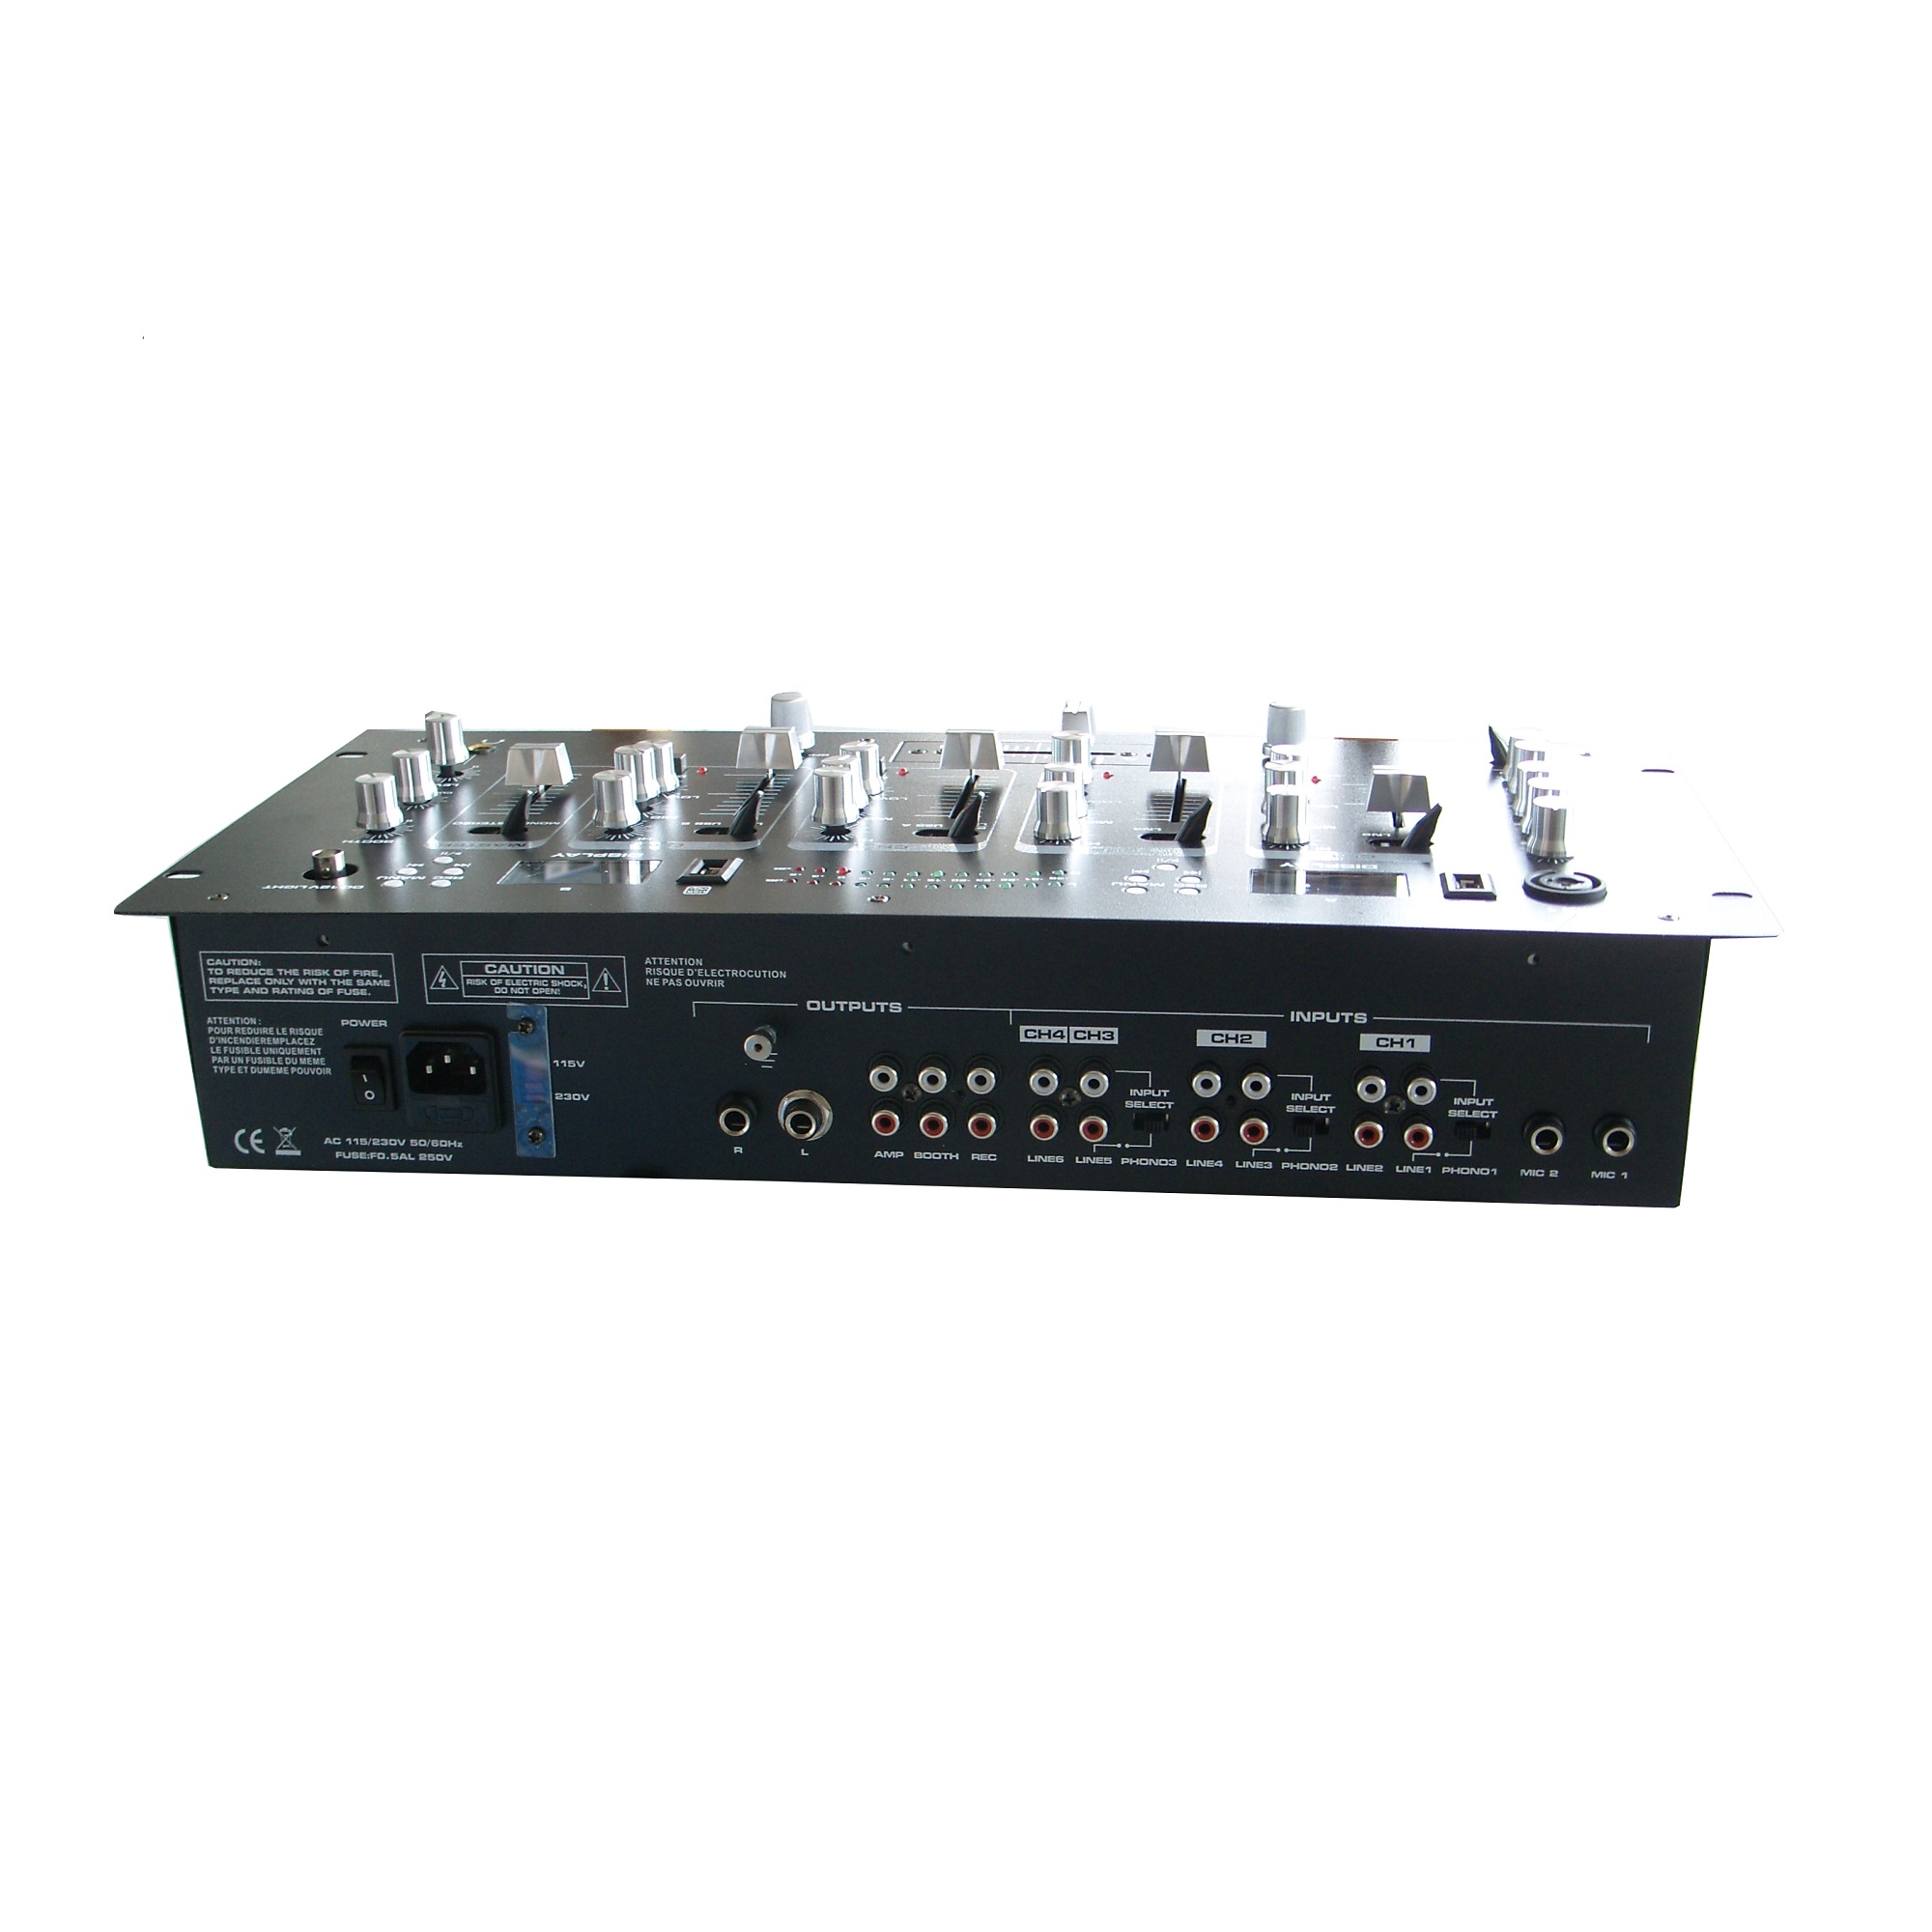 DJM134-2MP3 2xMP3 display player 4 stereo channels13 inputs DJ MIXER